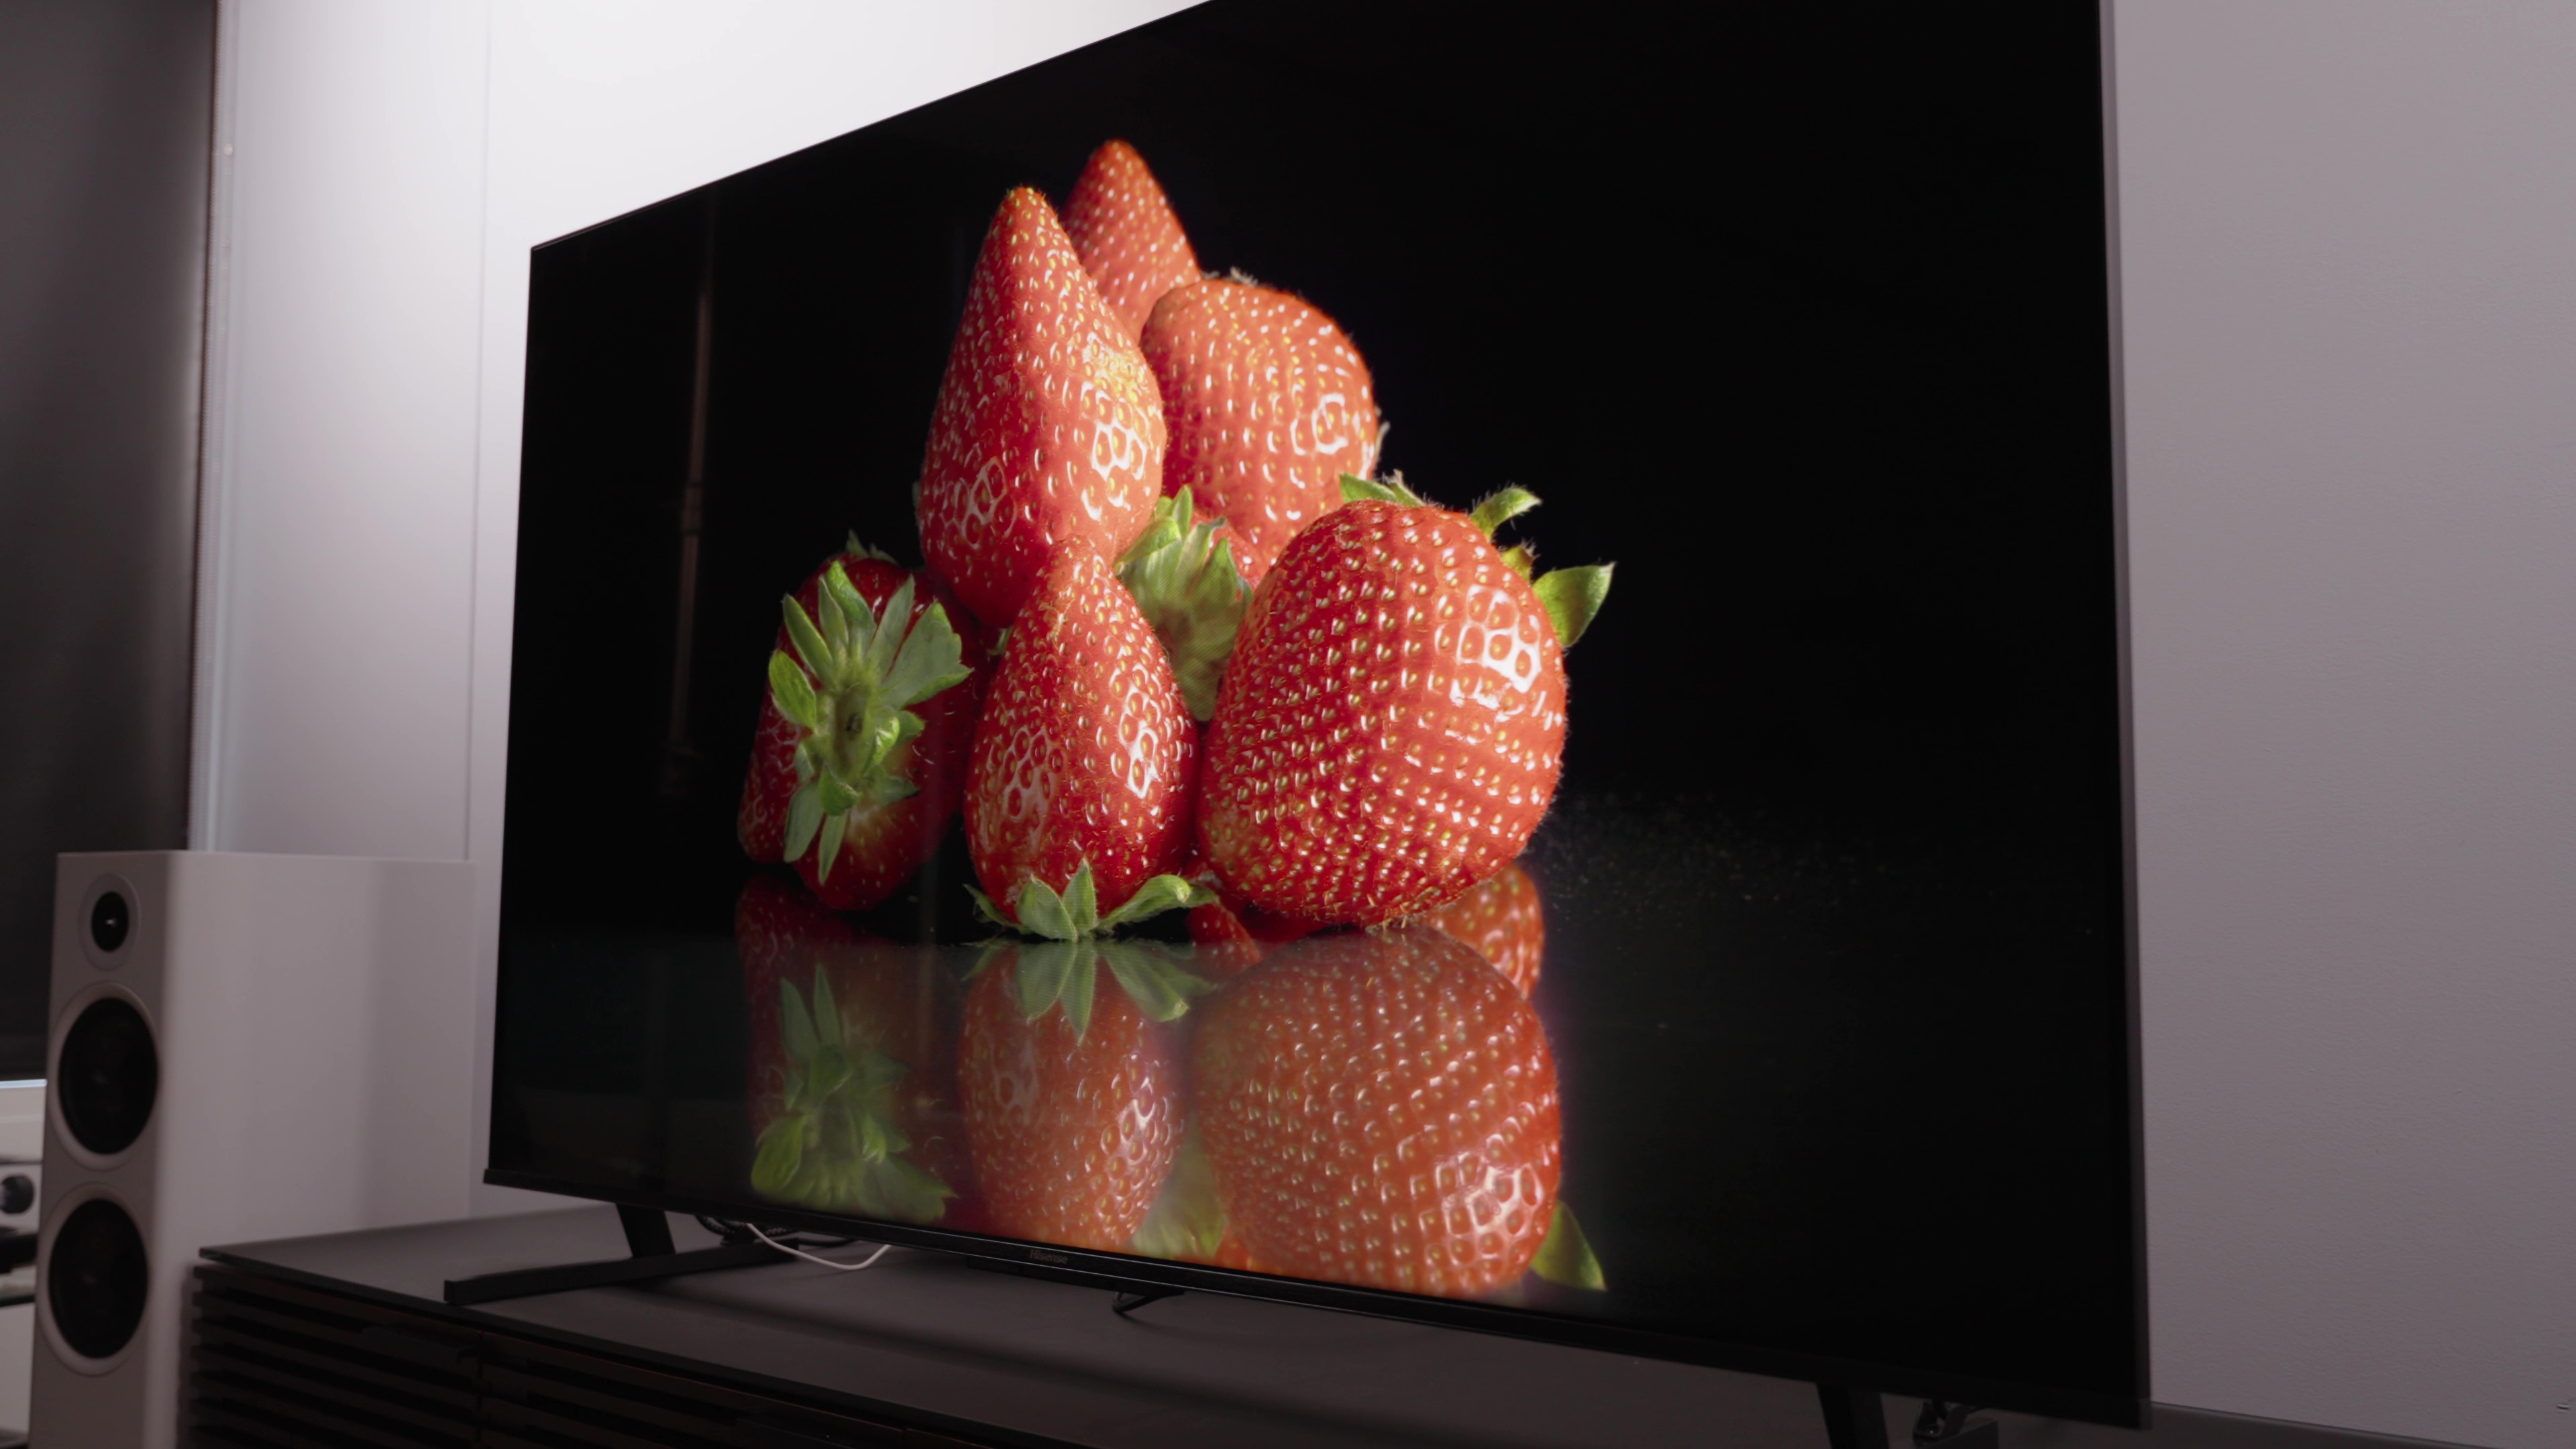 Hisense U8K Mini-LED Google TV review